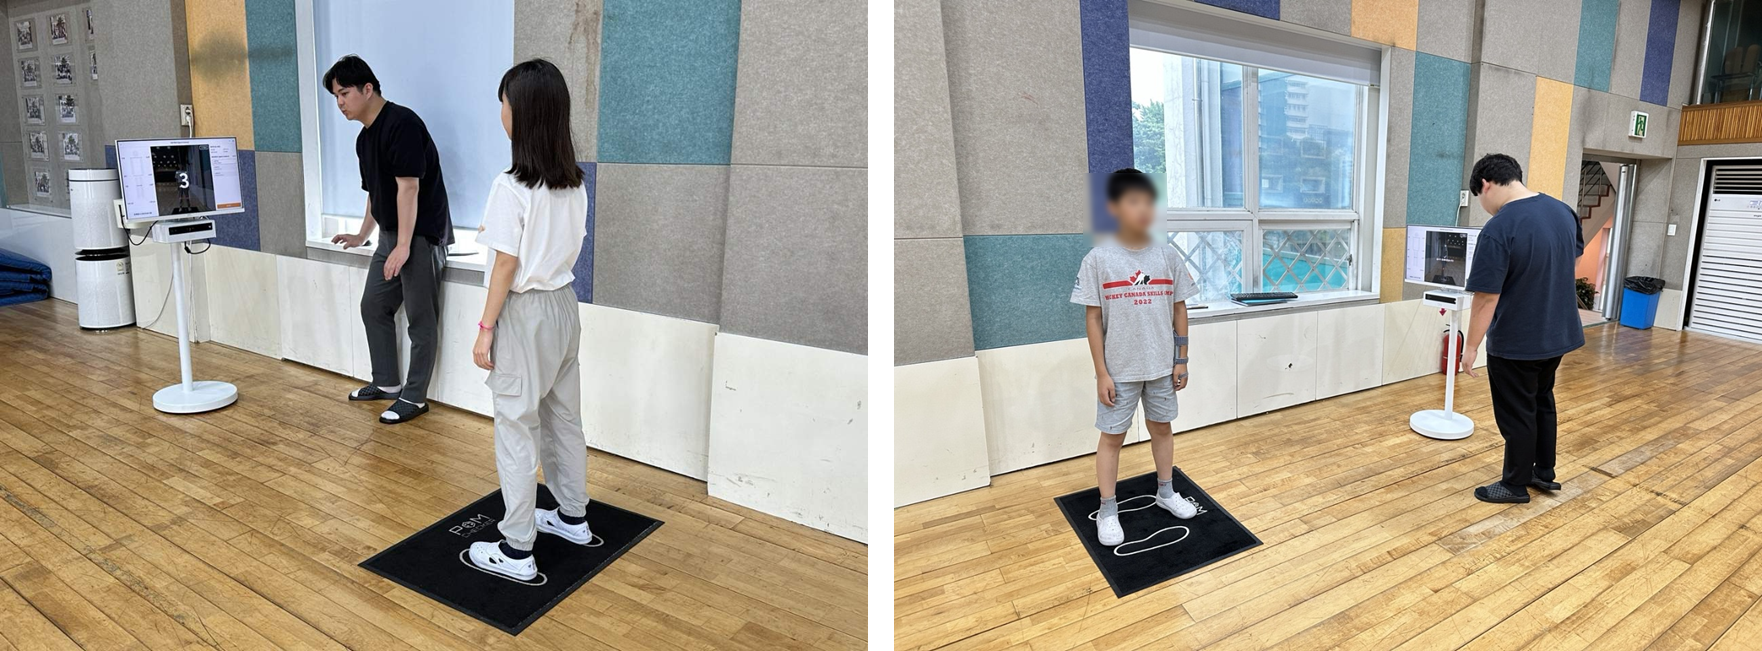 서울 한 초등학교에서 거북목 측정하는 모습